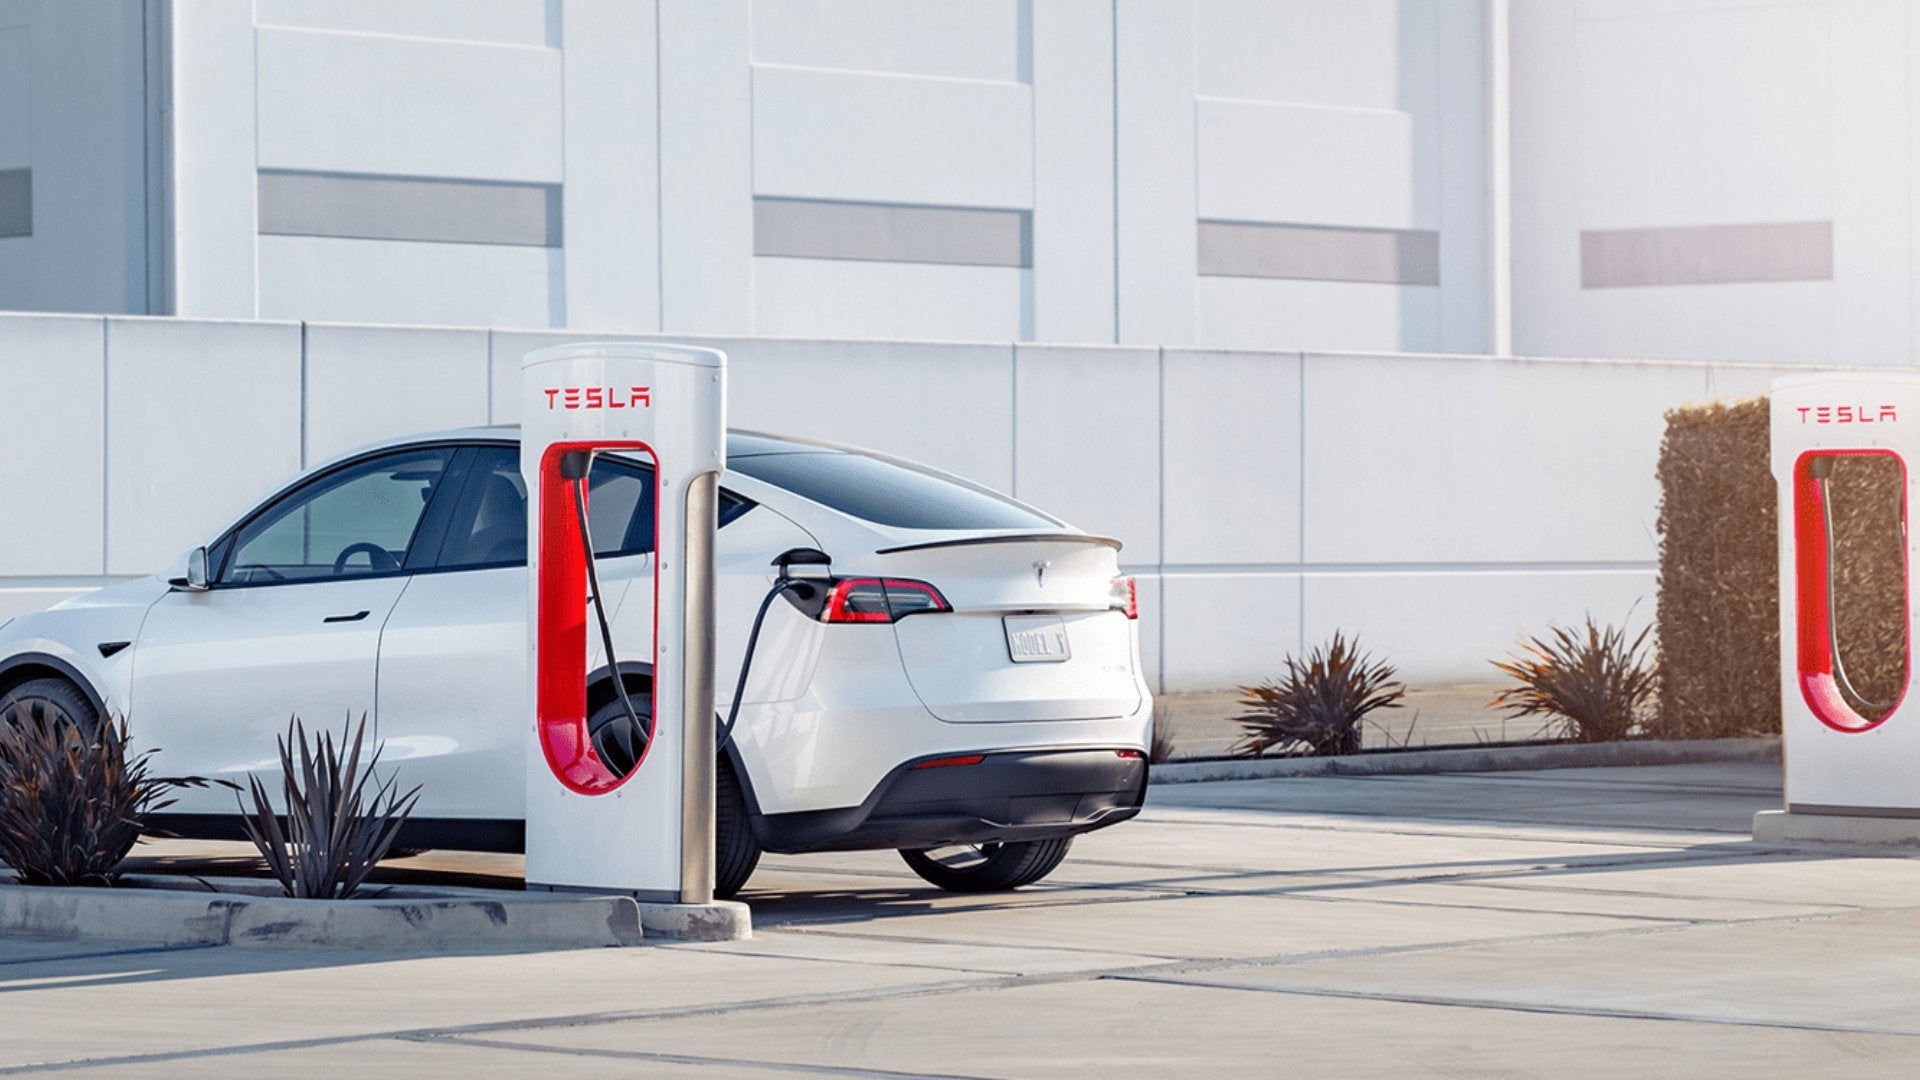 Neues Update - Tesla zeigt die voraussichtliche Wartezeit am Supercharger und die Anzahl der Autos auf dem Weg dorthin. - Shop4Tesla